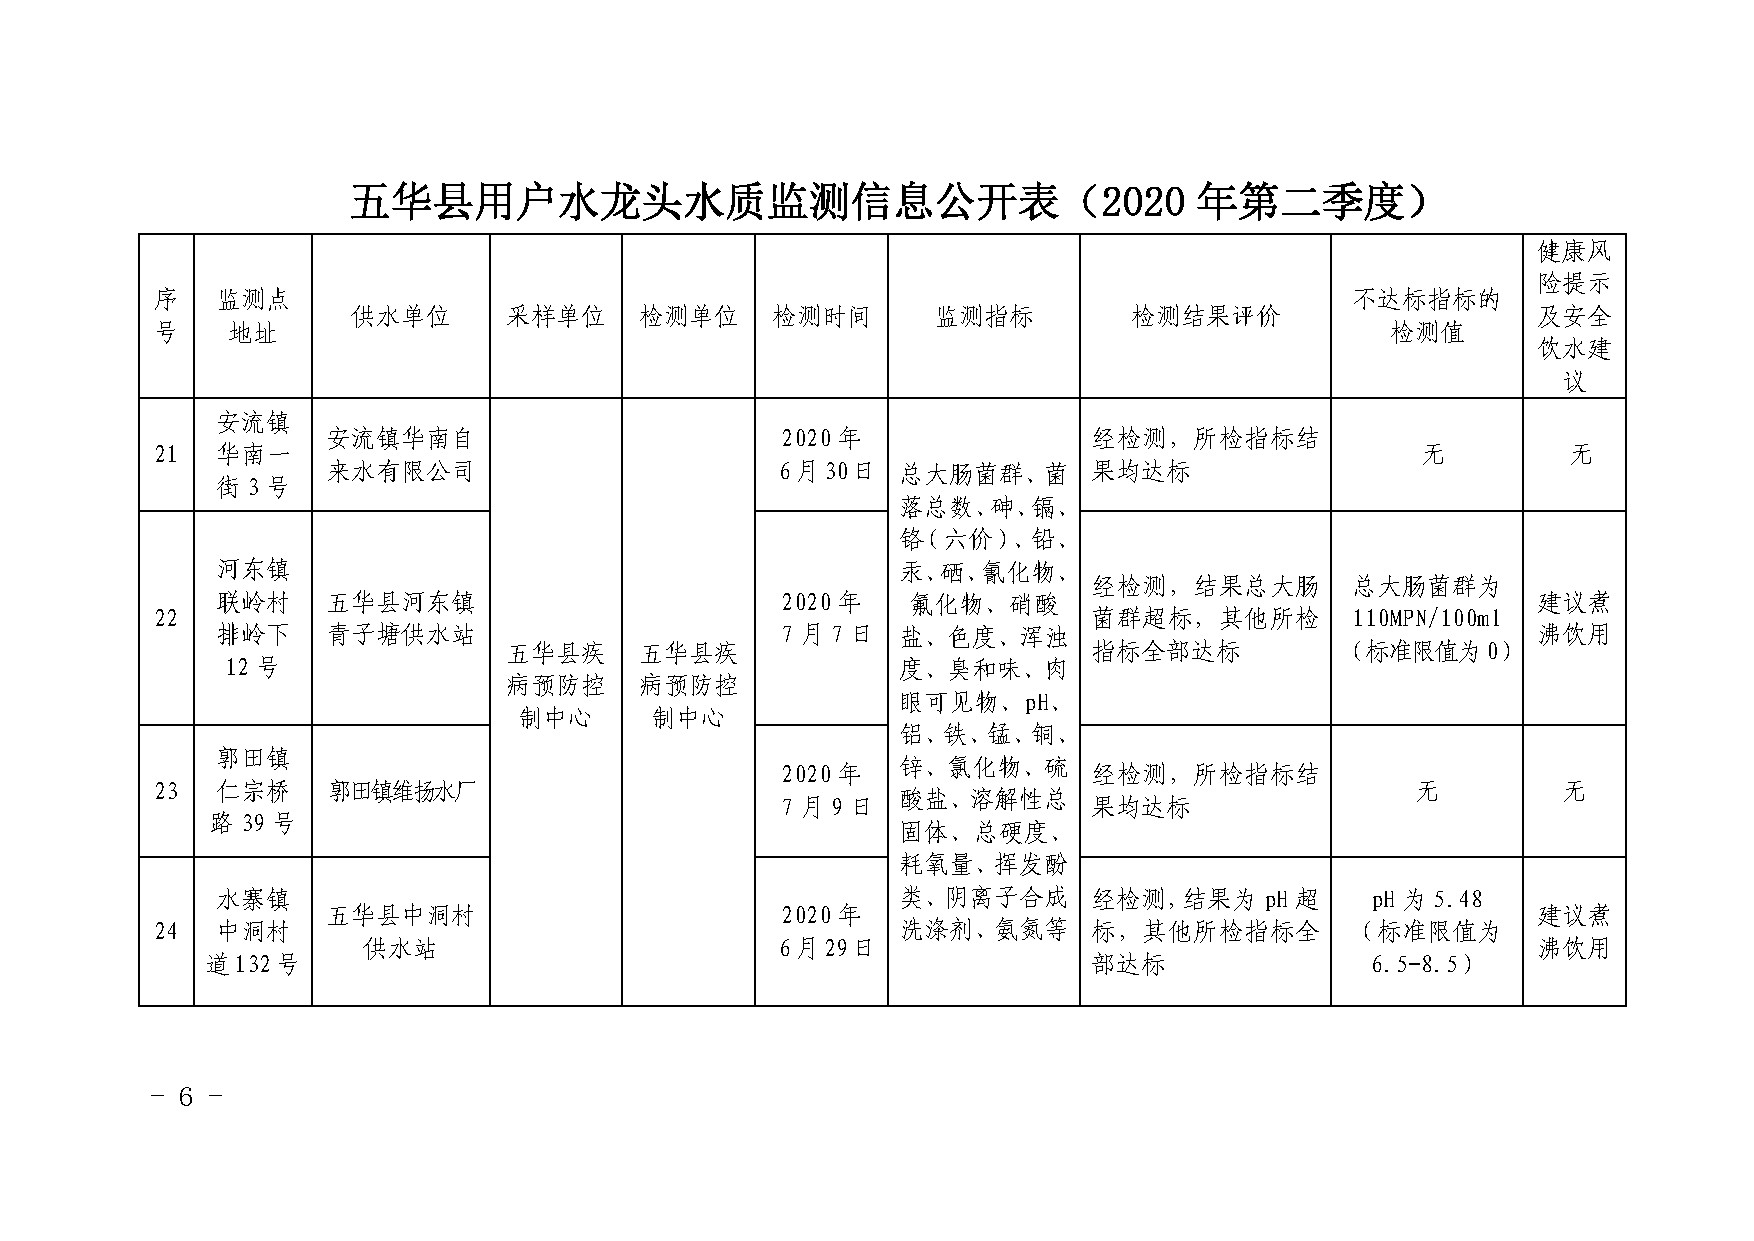 关于五华县2020年第二季度用户水龙头水质监测结果的报告_页面_6.png